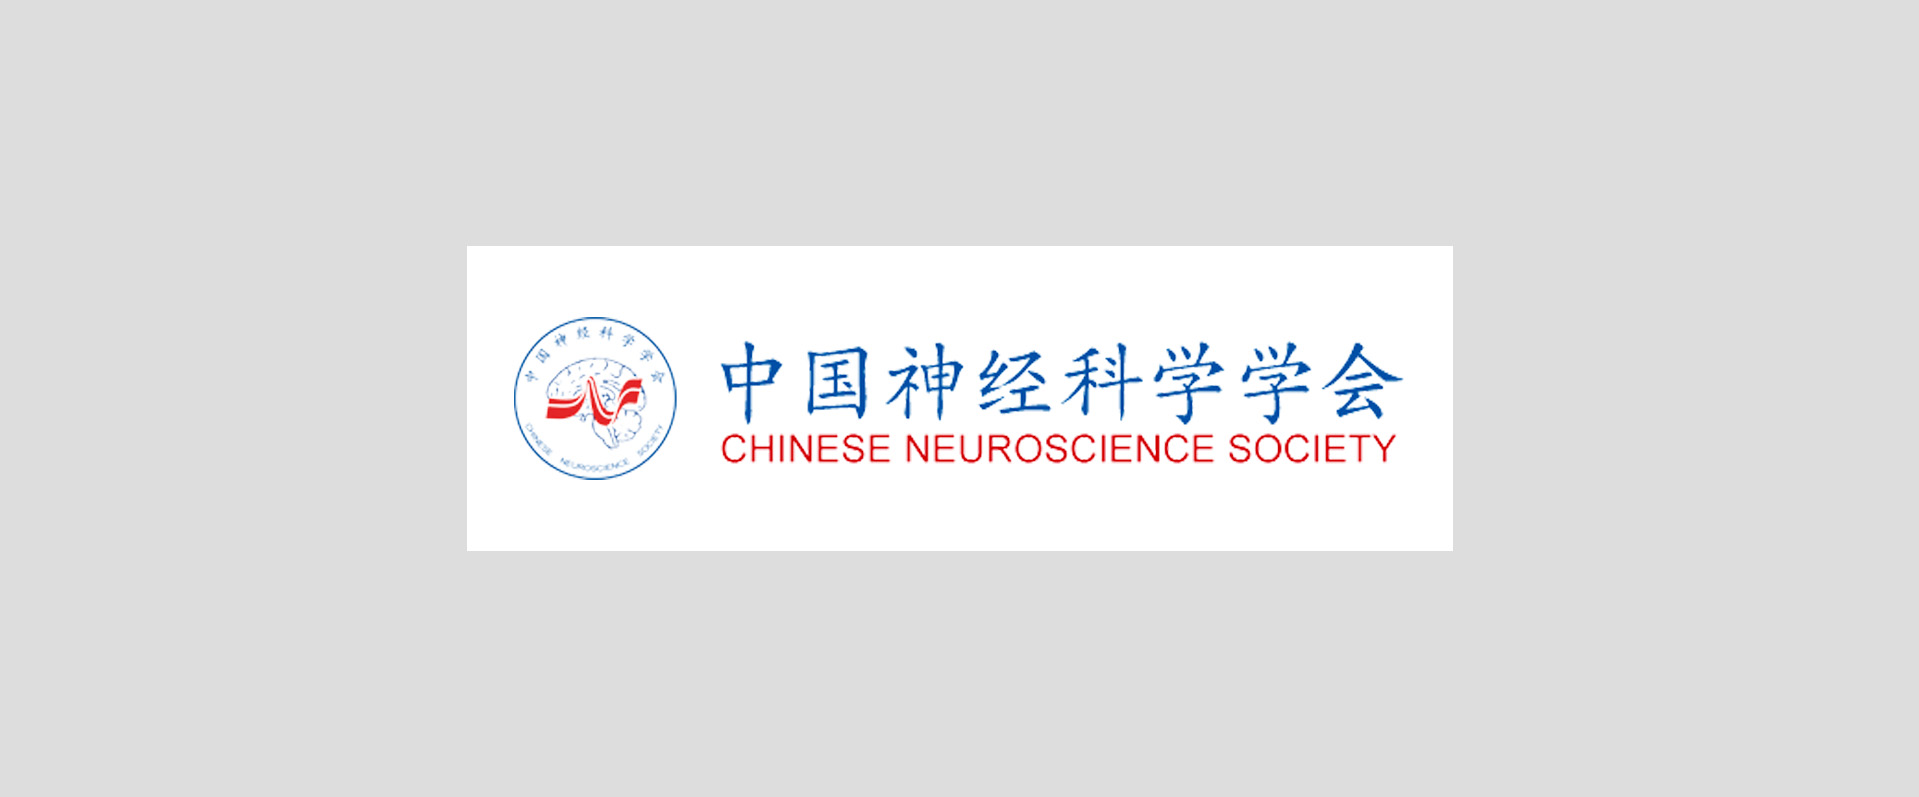 天桥脑科学研究院连续第三次支持中国神经科学学会大会 独家战略合作提供全面服务